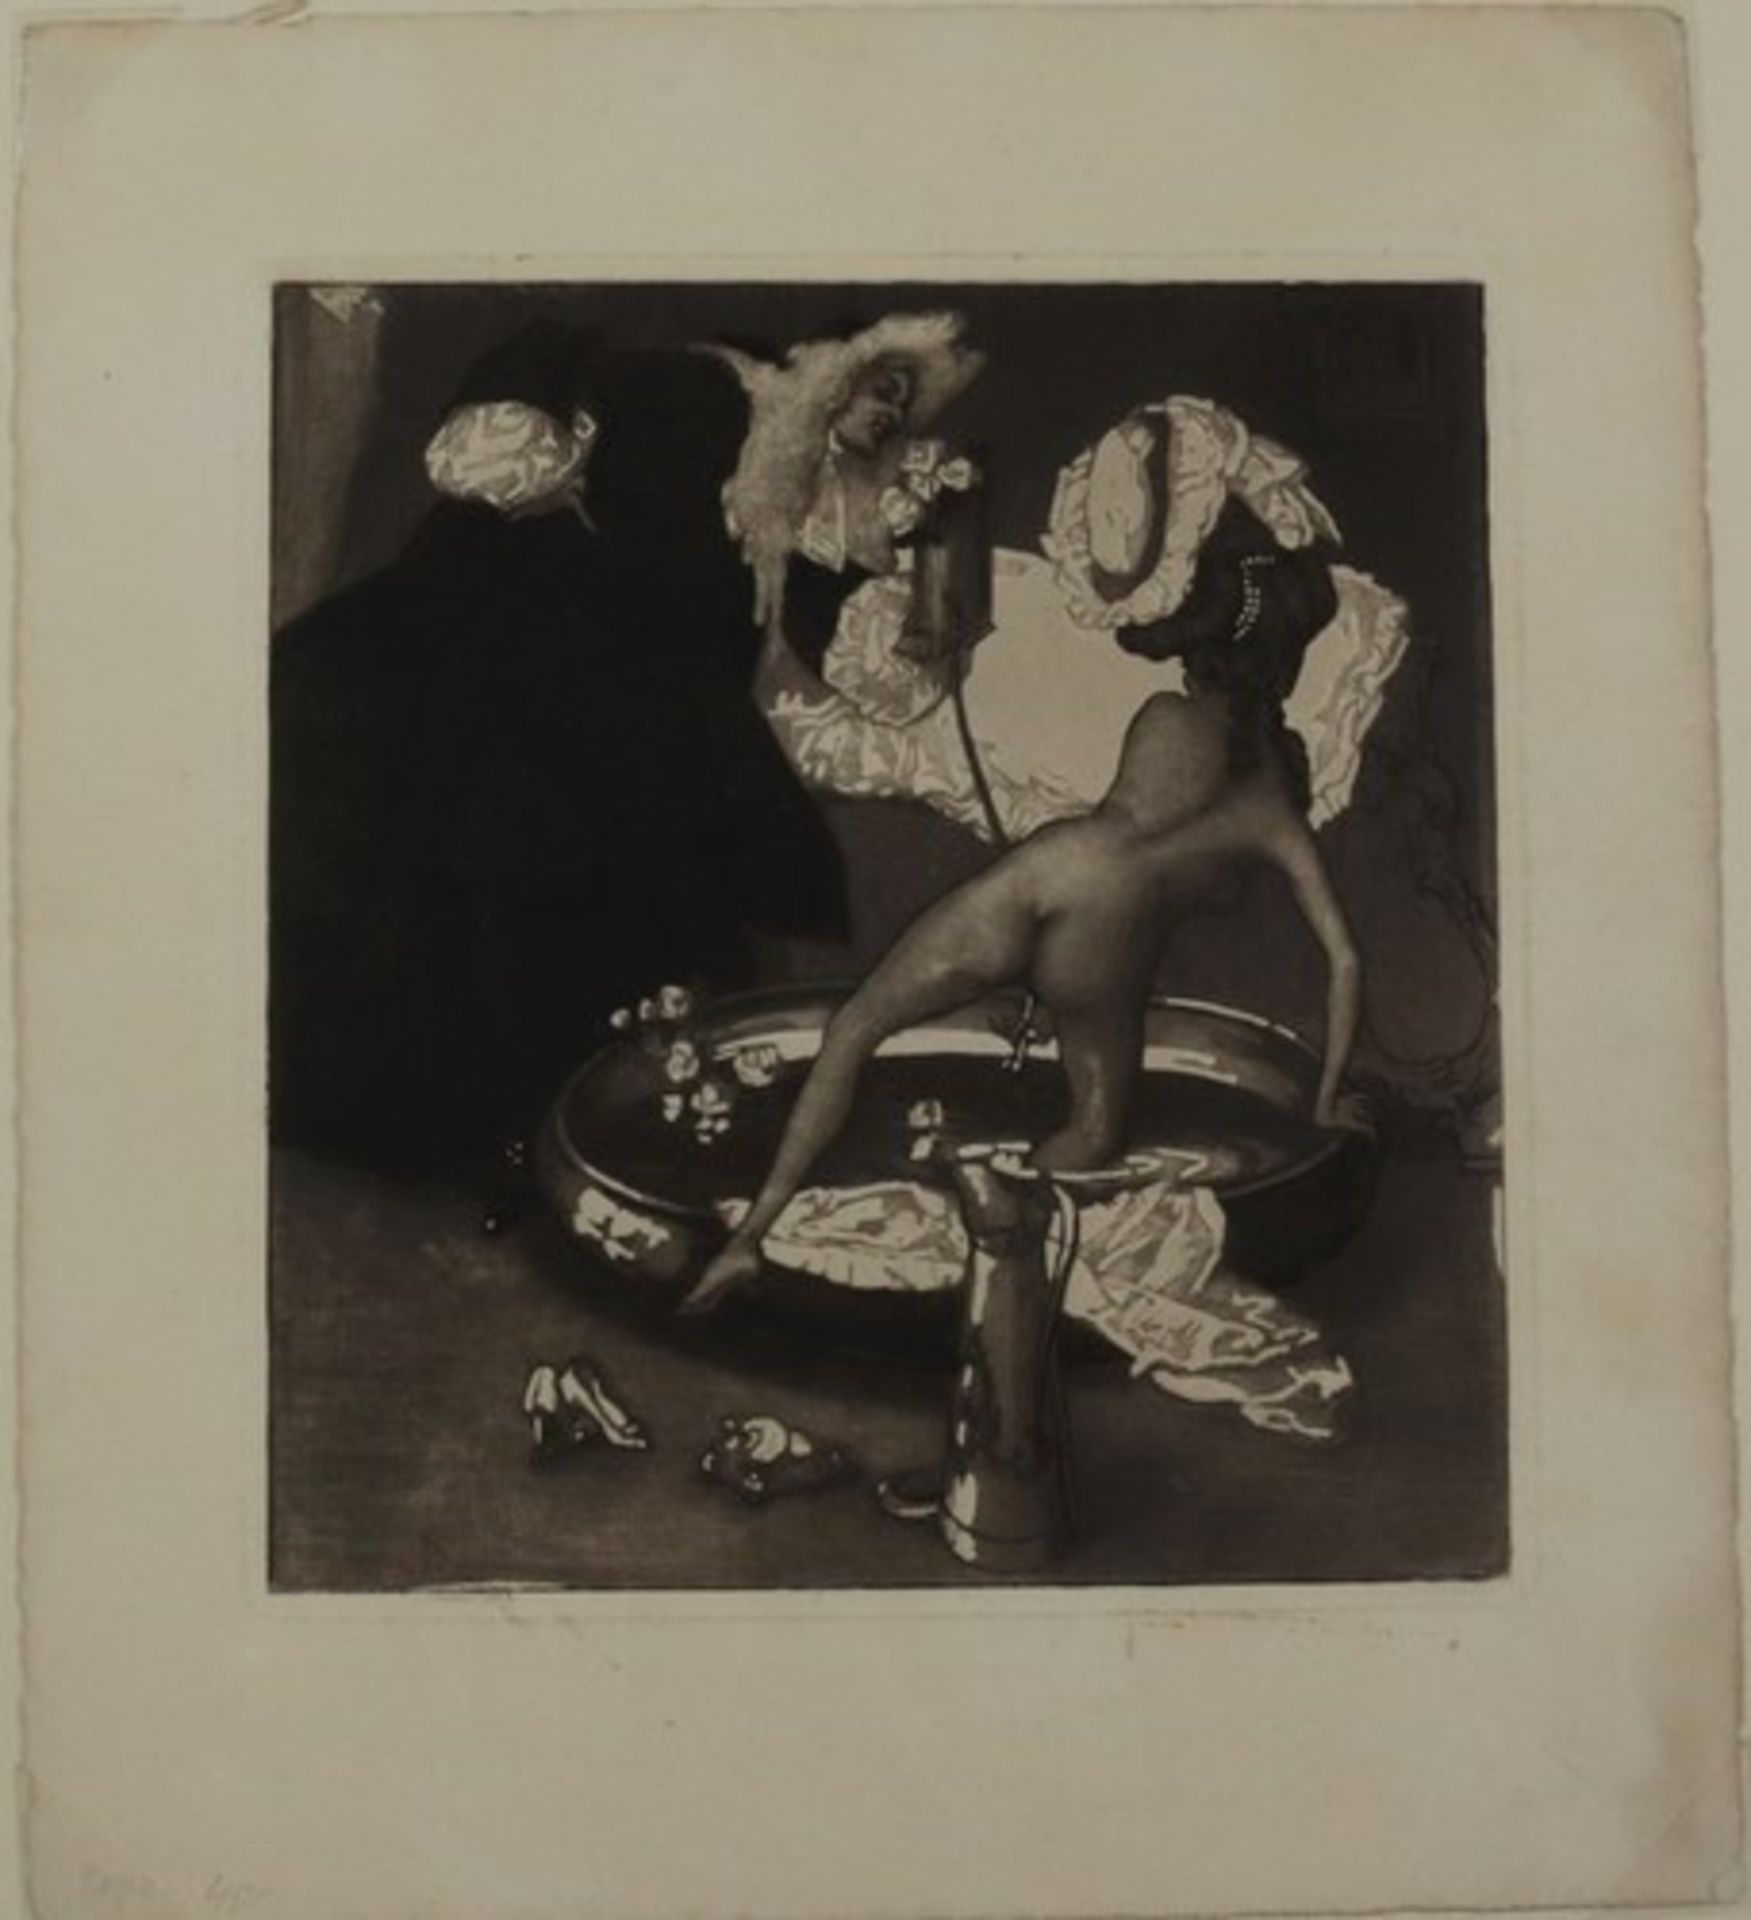 Bayros, Franz von - Erotica1866 Zagreb - 1924 Wien, Studium an der Wiener Akademie, ab 1897 an den